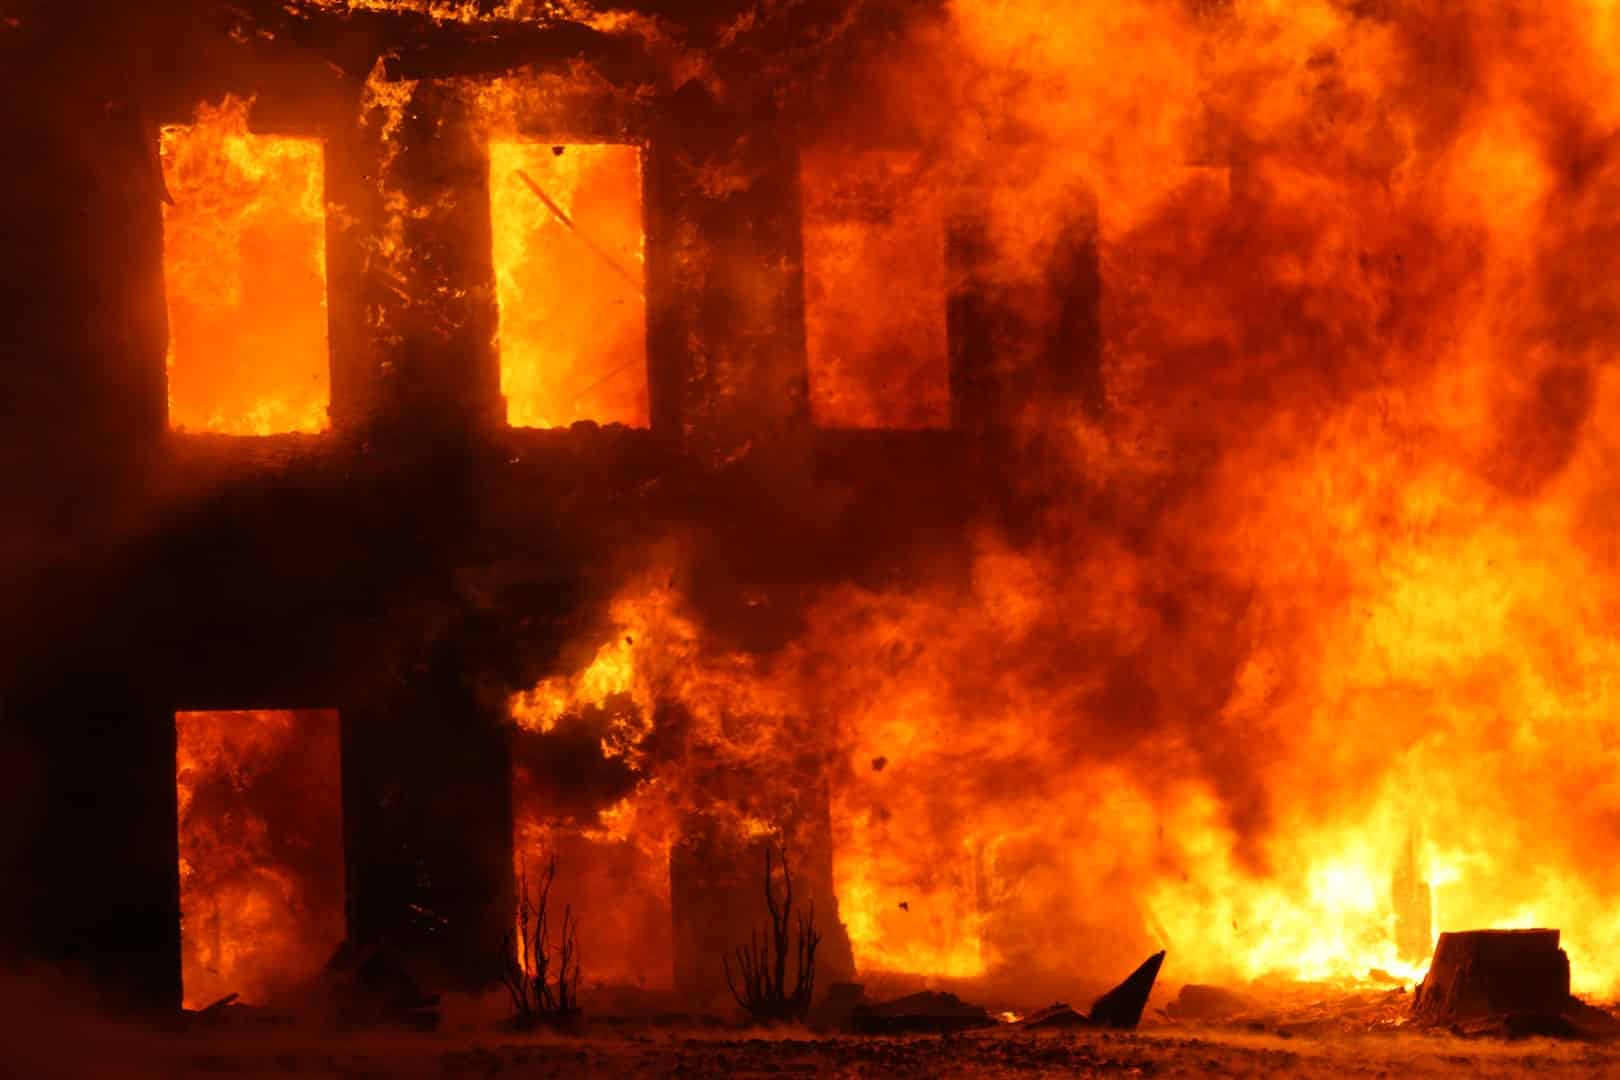 Une assurance habitation doit prendre en considération le risque d'incendie